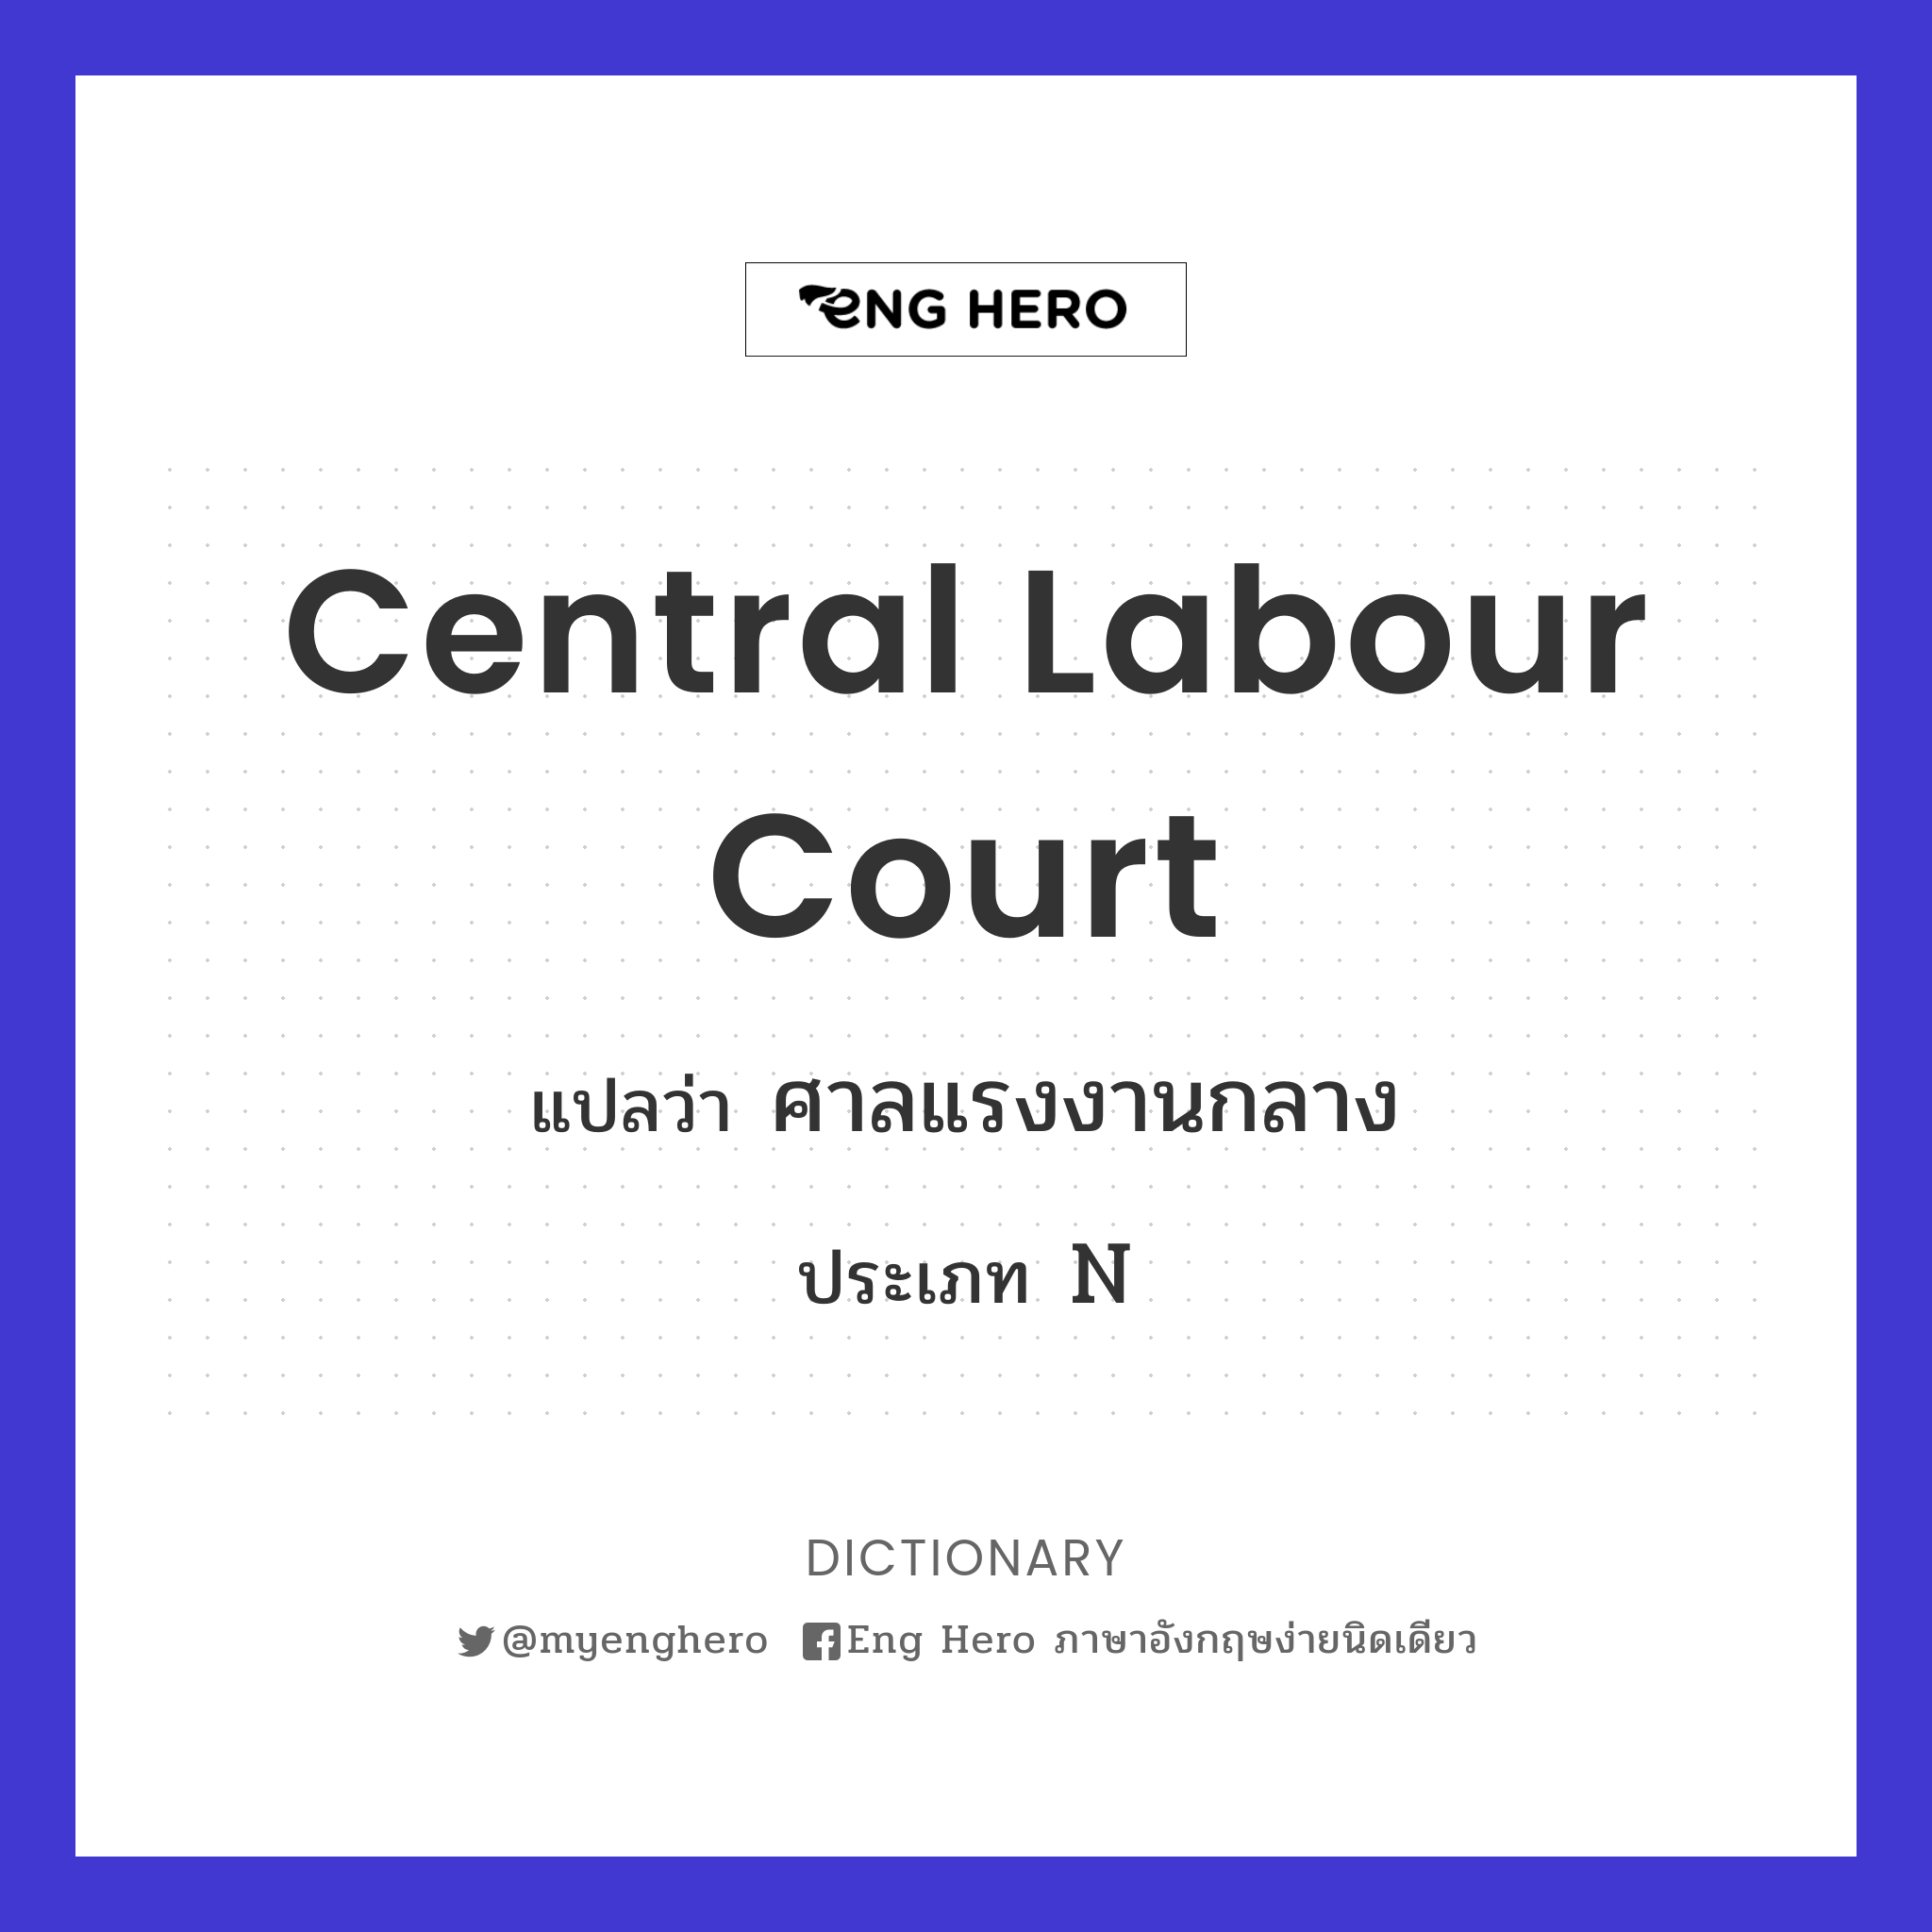 Central Labour Court